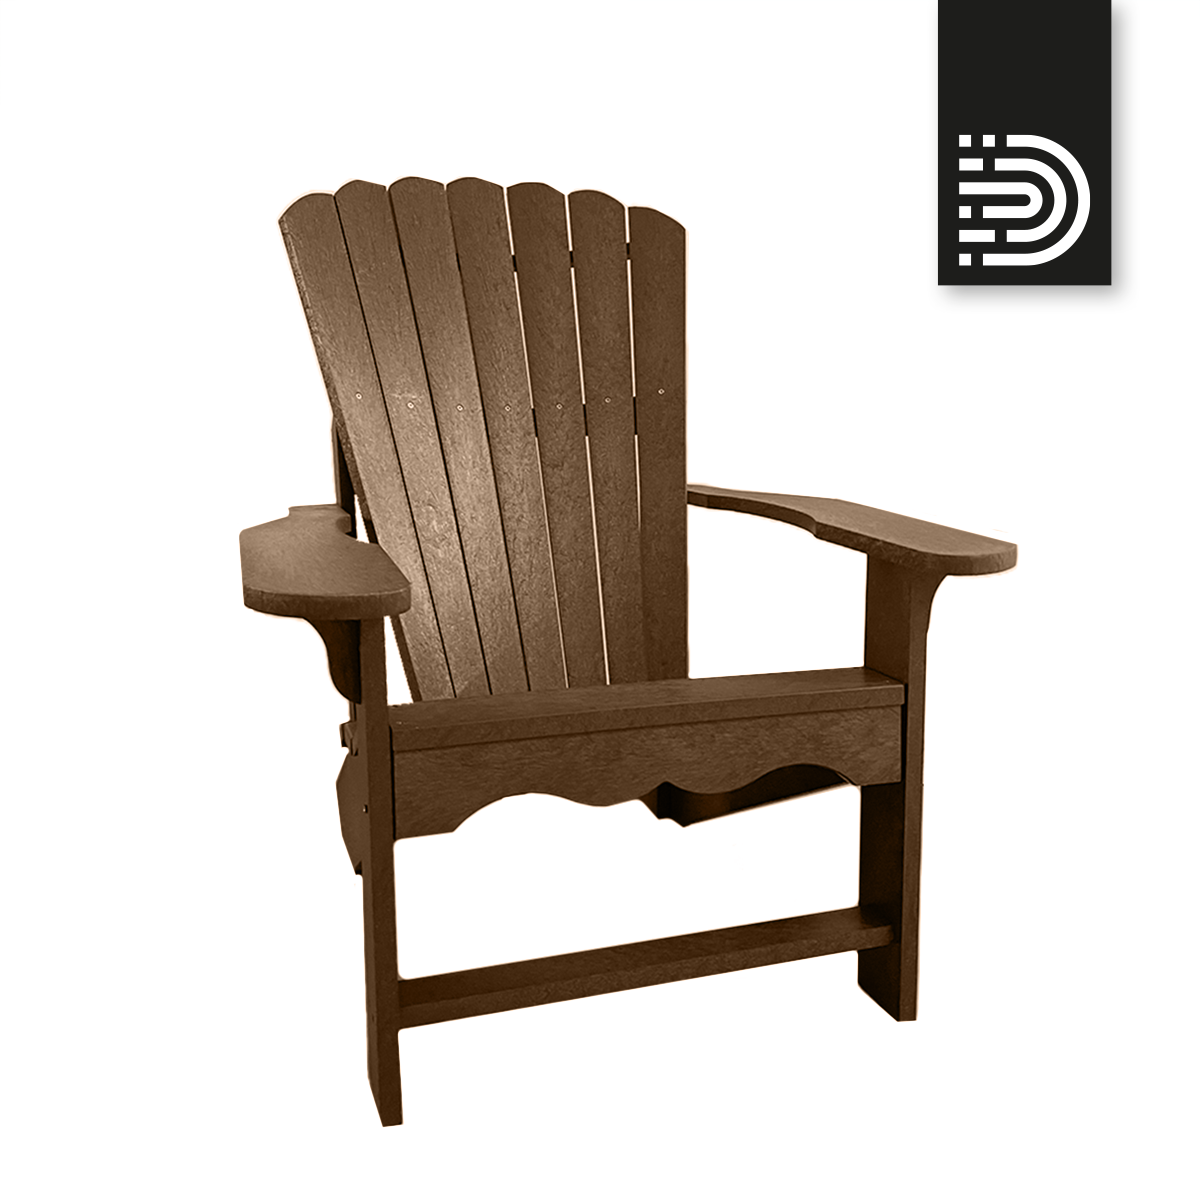  B-Ware: CAPCX07 Classic Adirondack Chair - Expresso 46